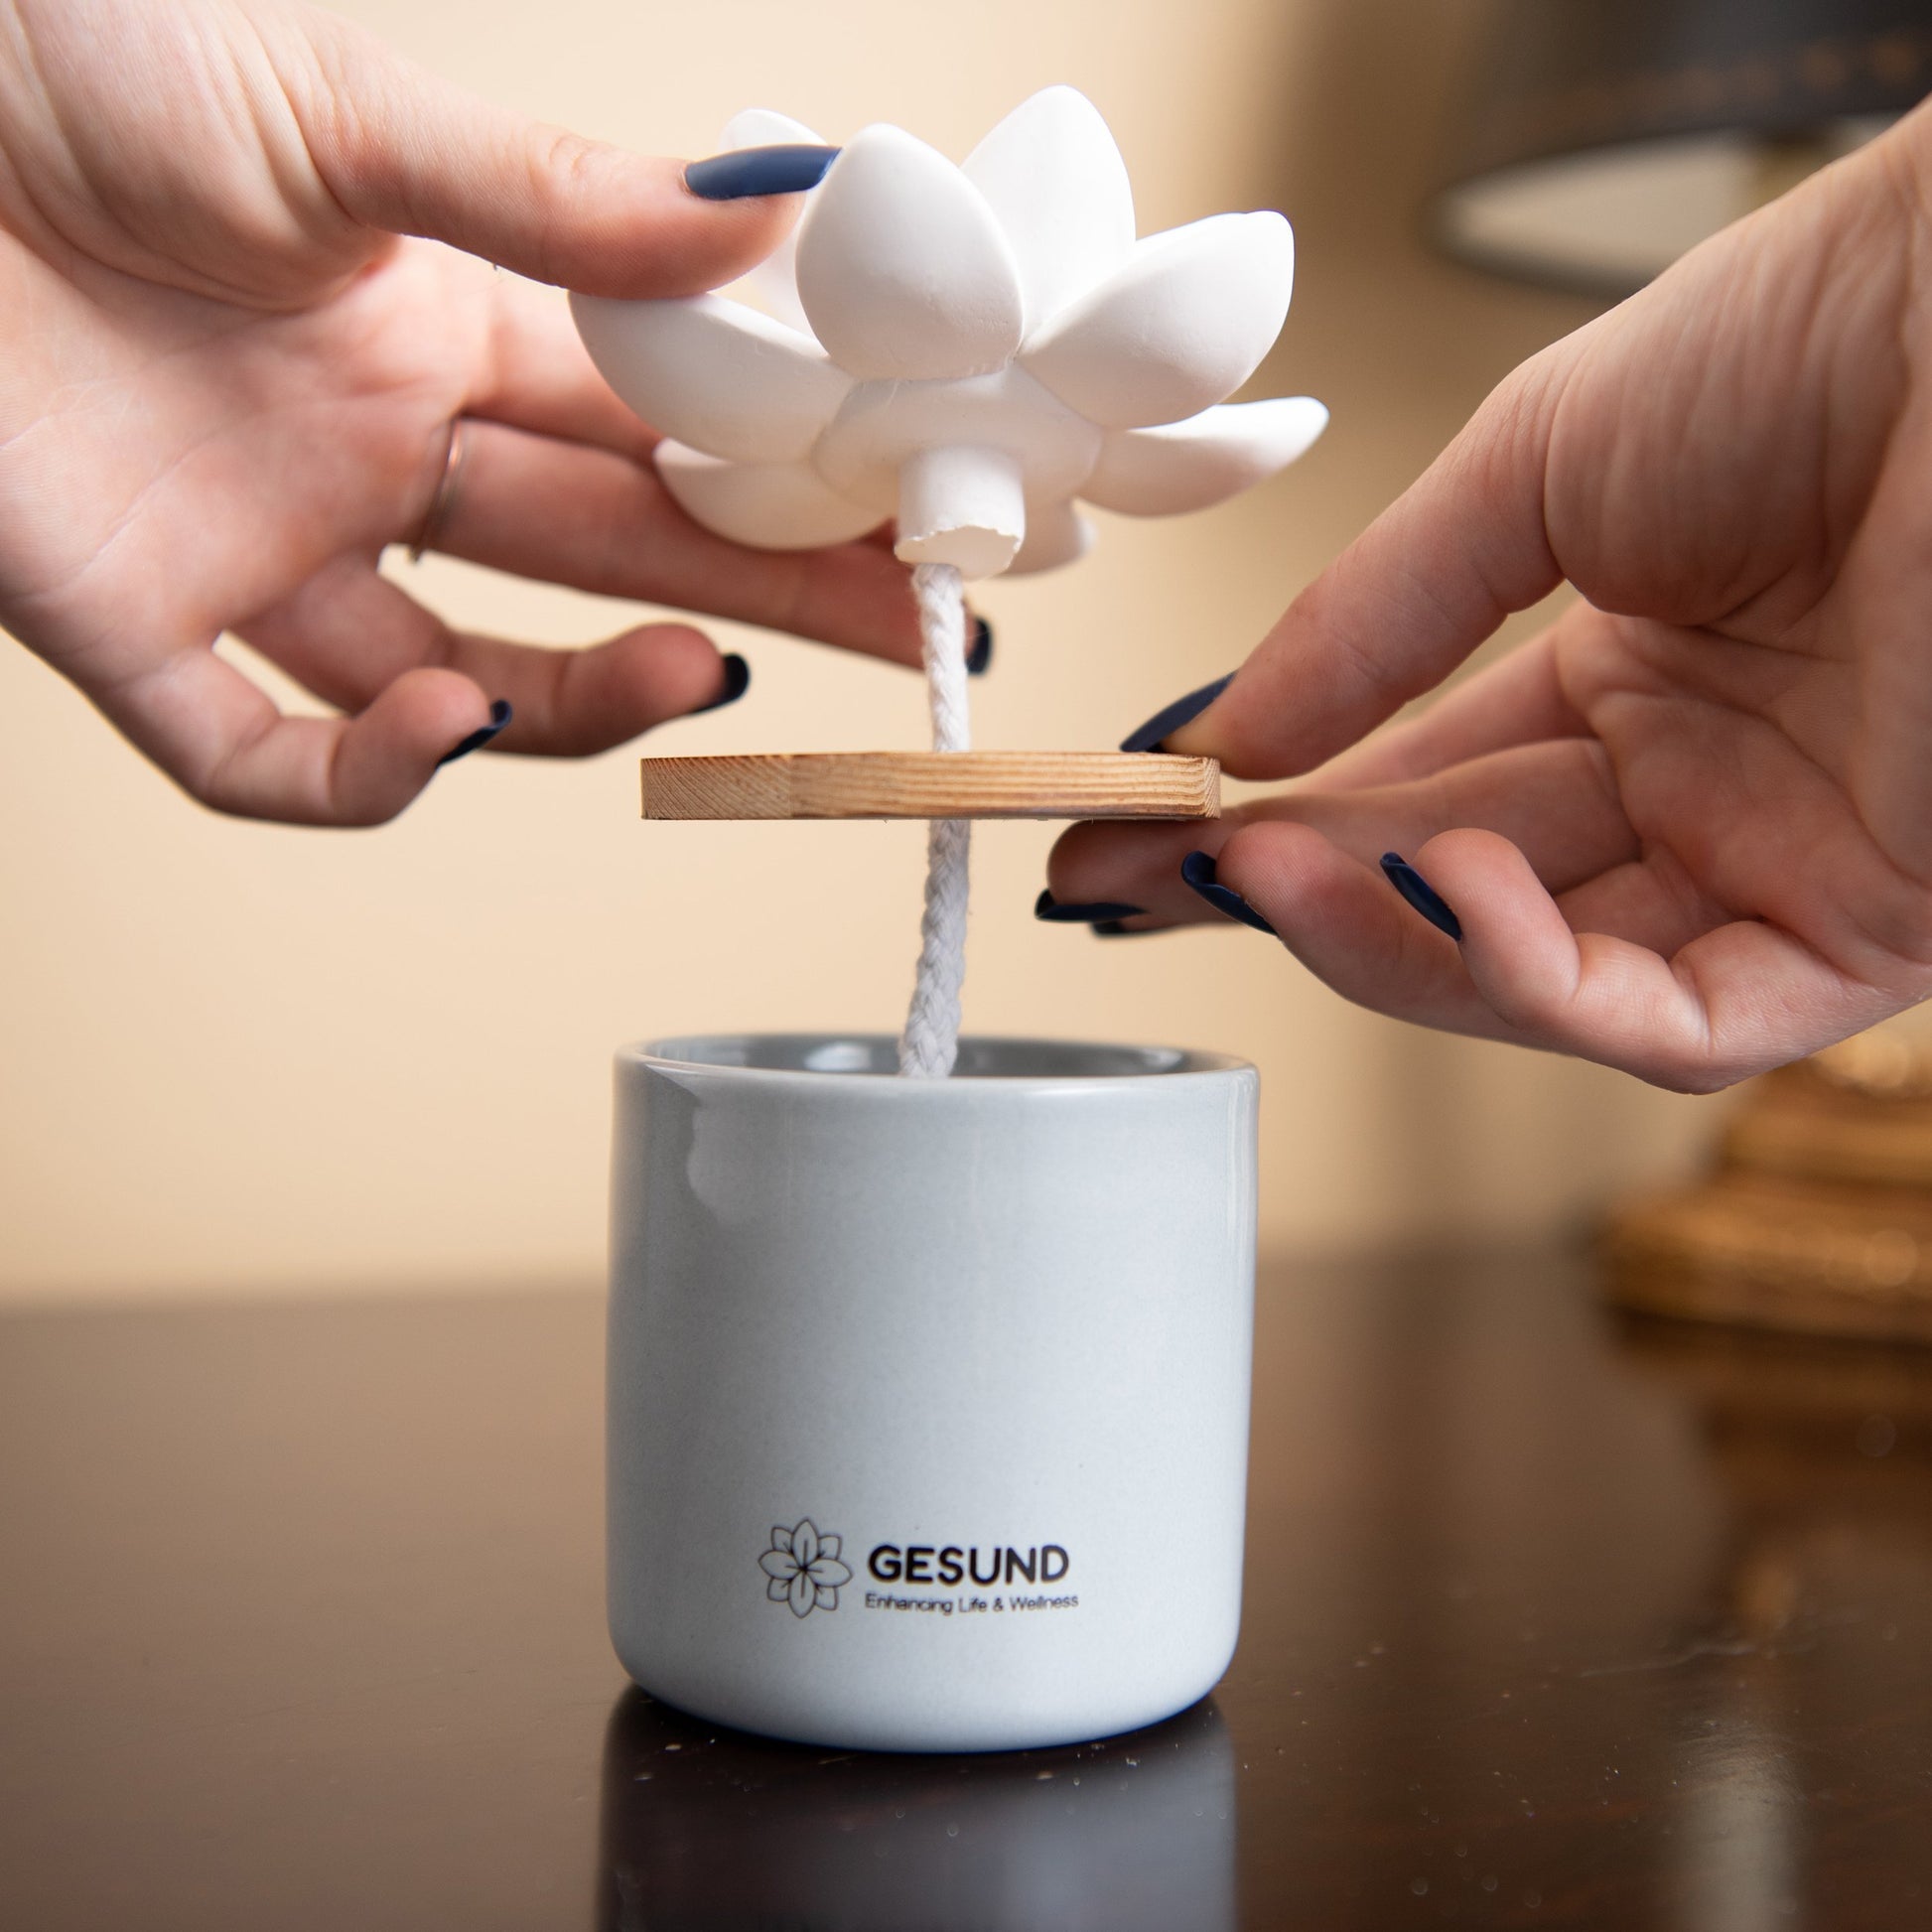 White Flower Essential Oil Blend – World of Aromas